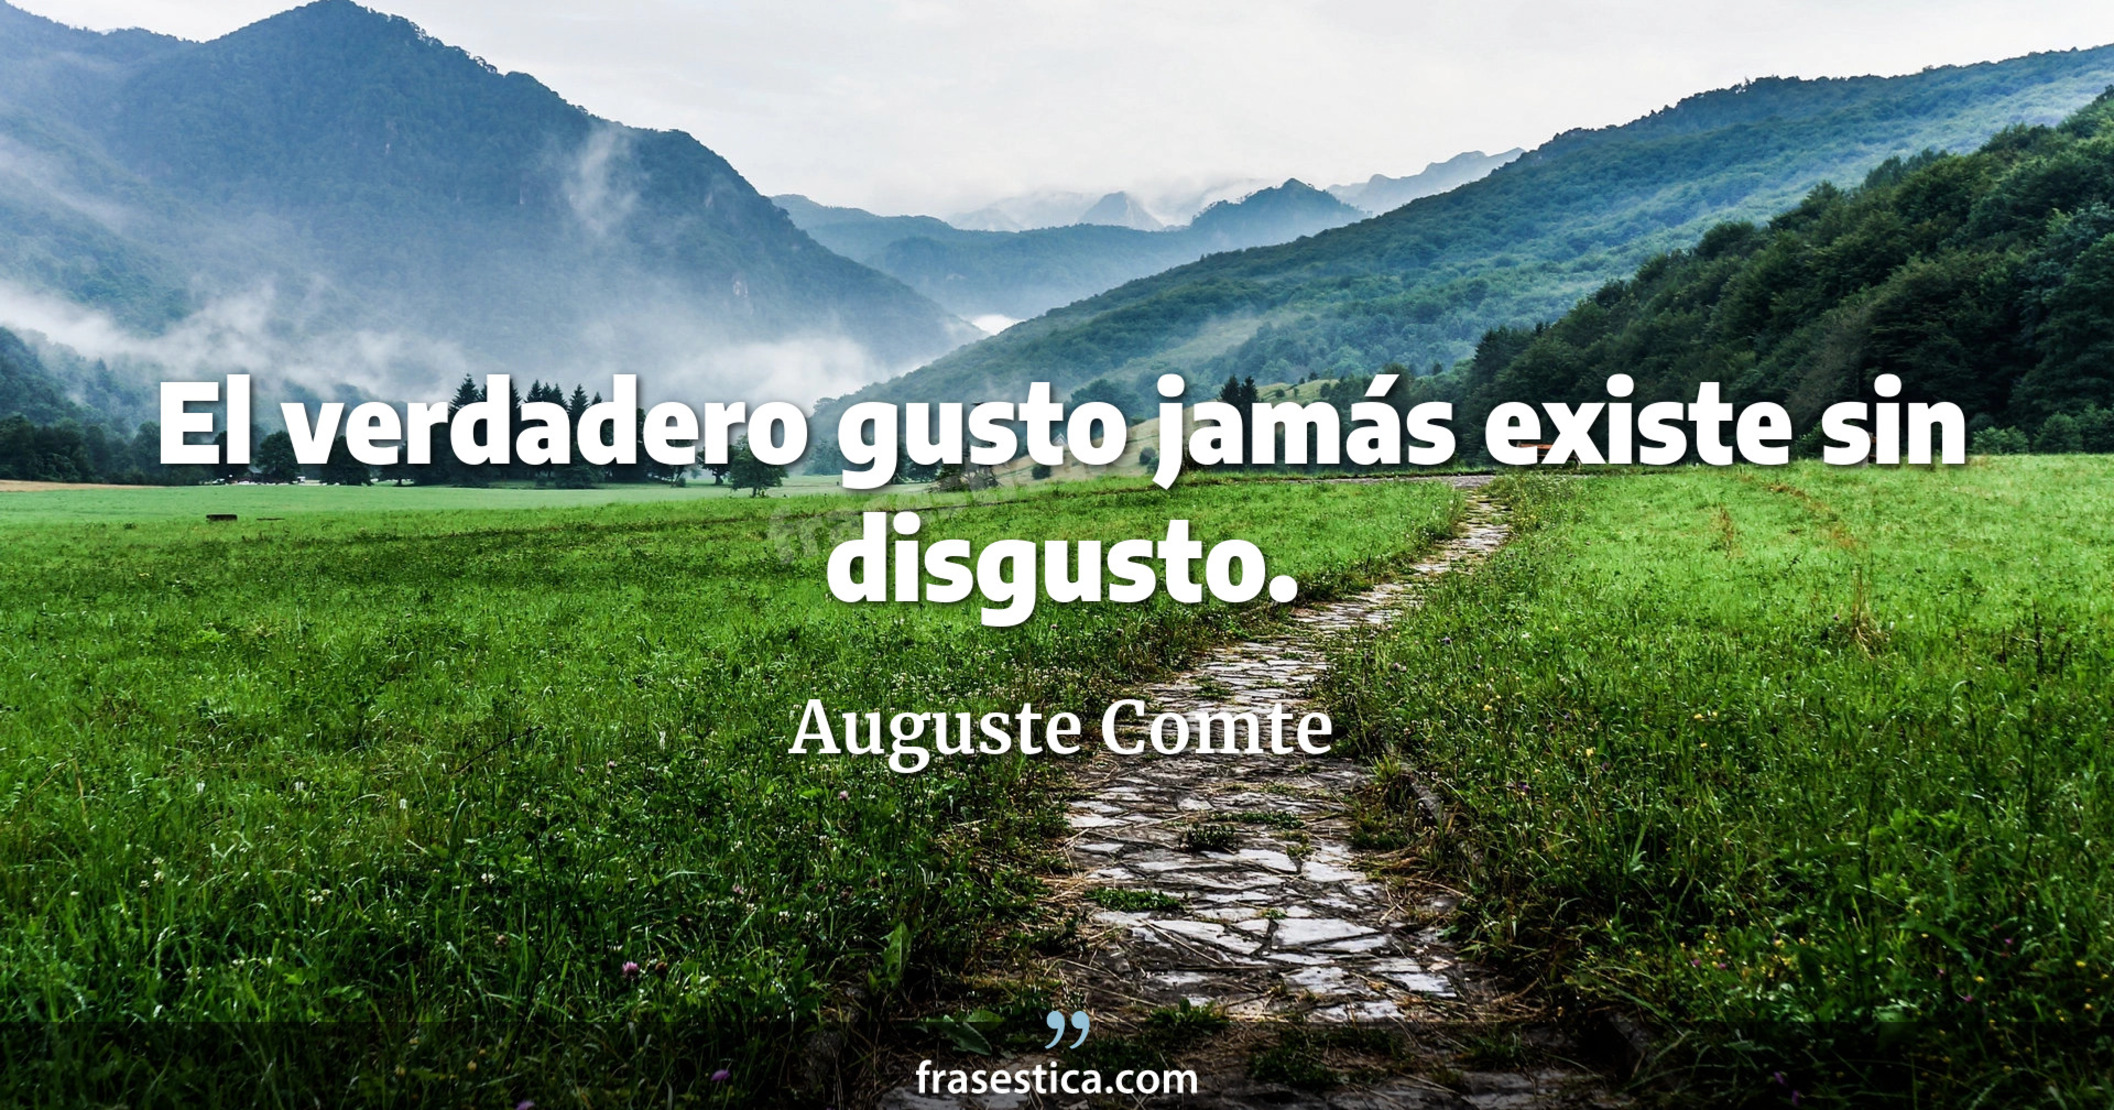 El verdadero gusto jamás existe sin disgusto. - Auguste Comte